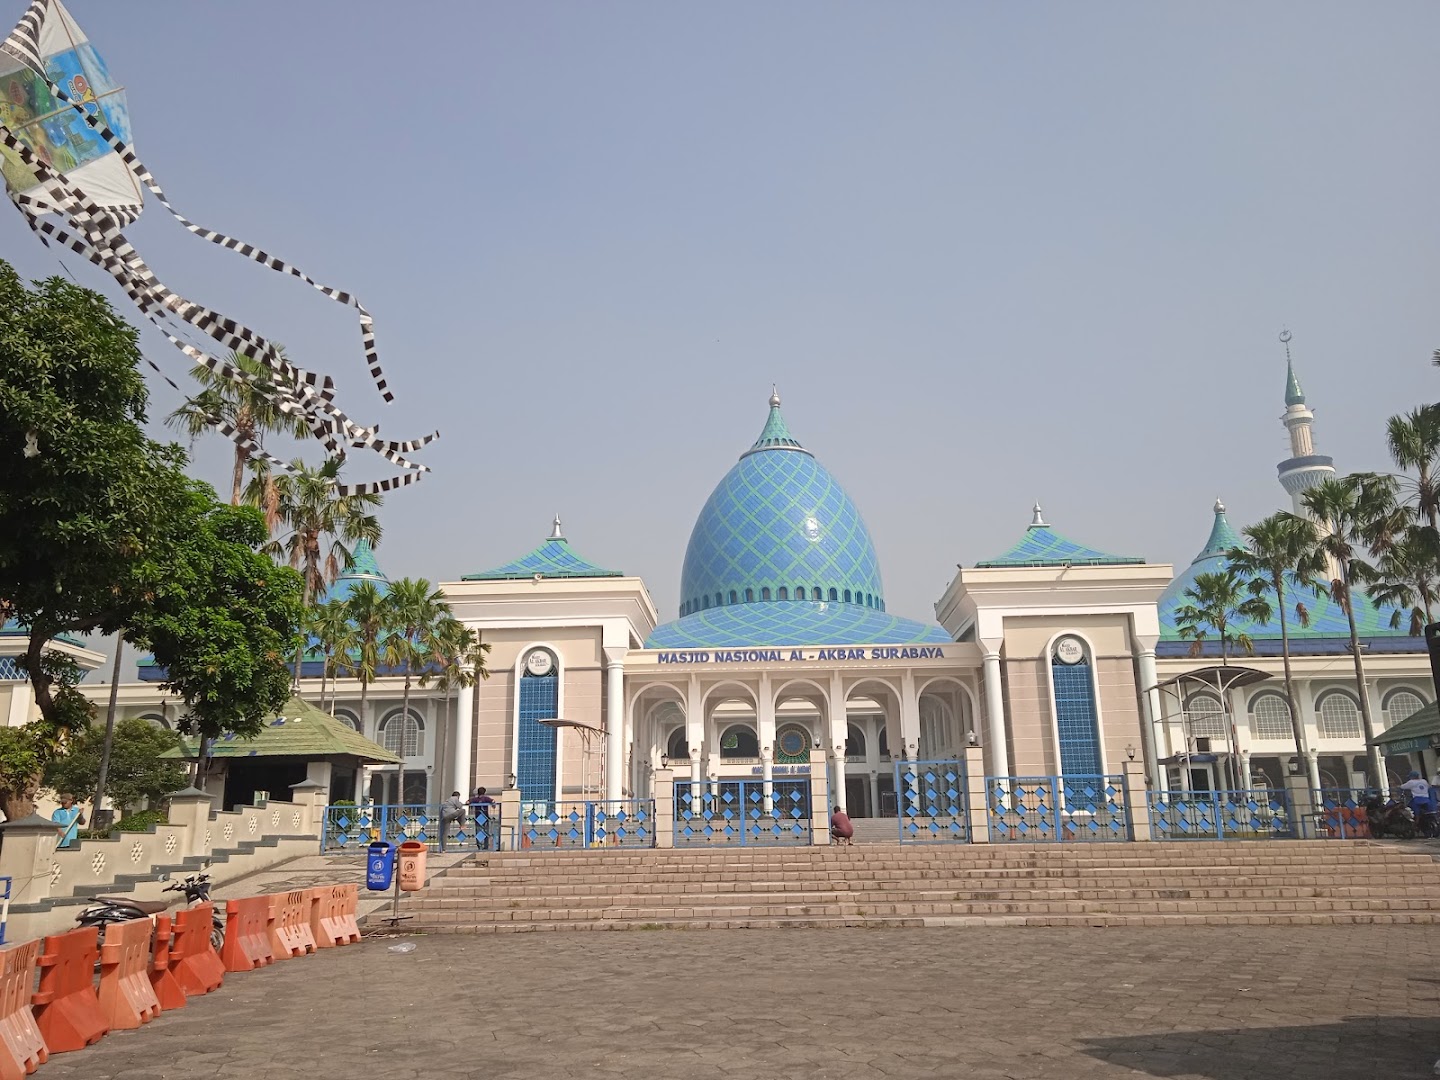 Masjid Nasional Al-akbar Surabaya Photo